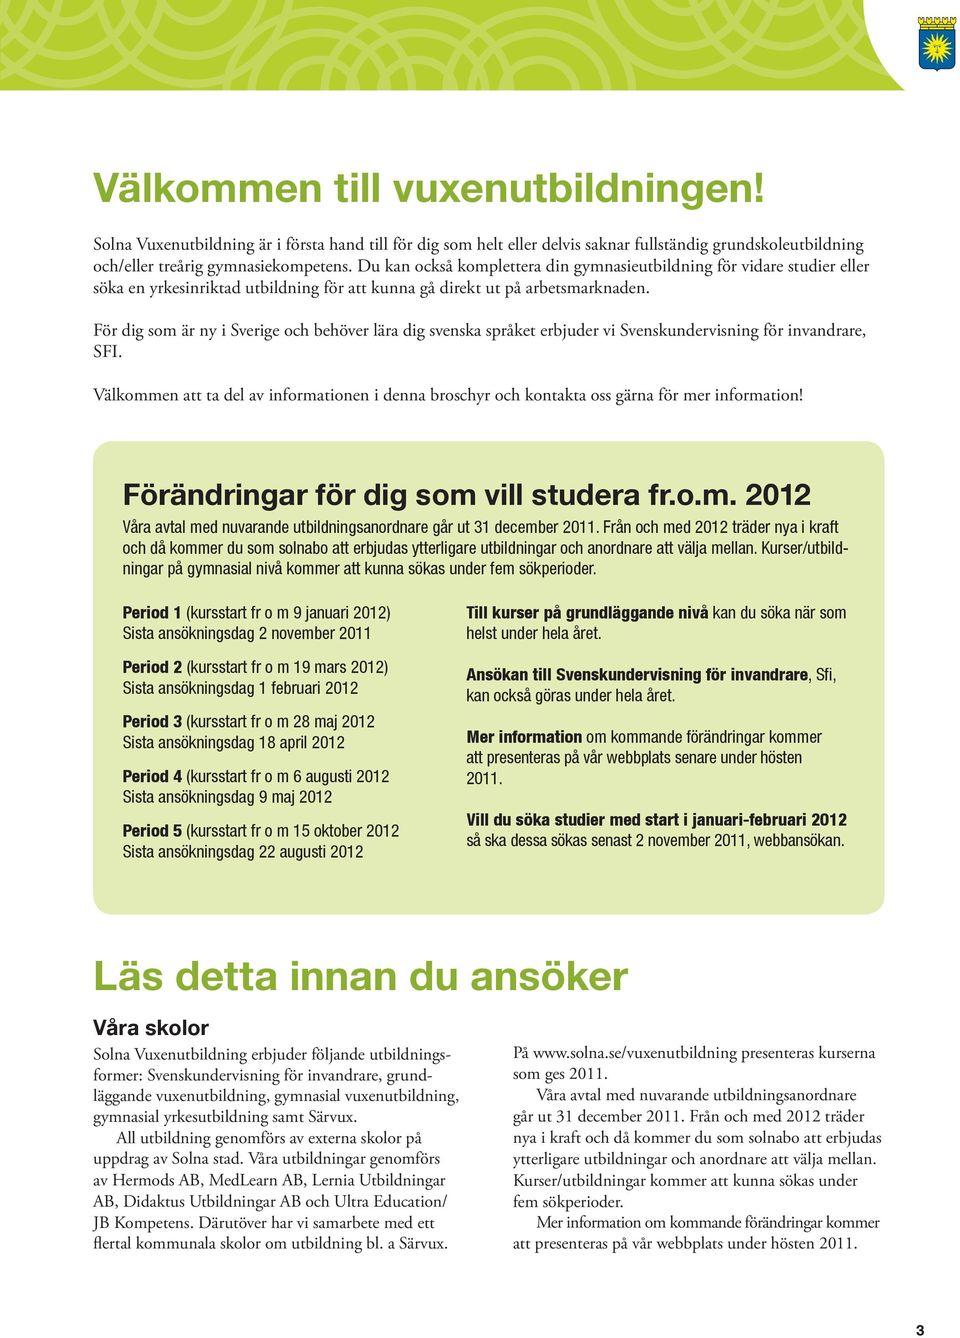 För dig som är ny i Sverige och behöver lära dig svenska språket erbjuder vi Svenskundervisning för invandrare, SFI.